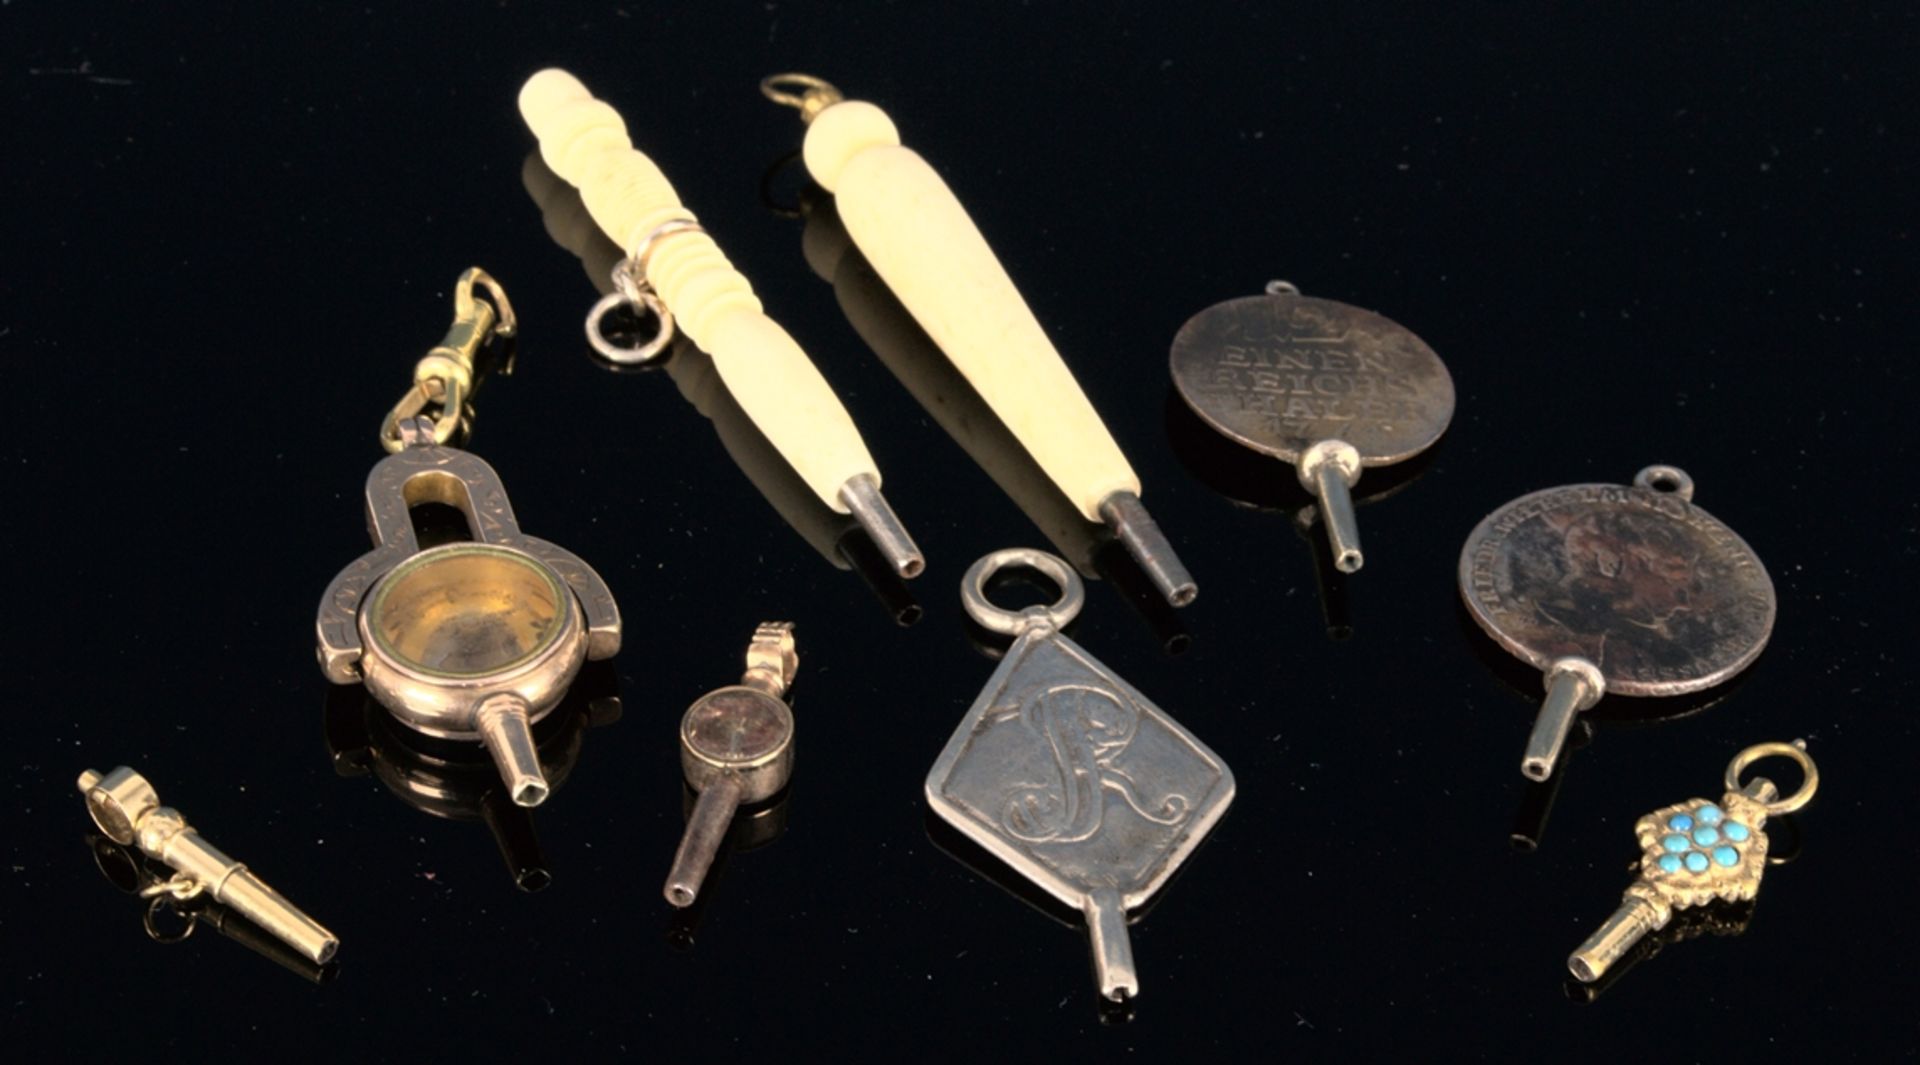 9teilige Sammlung versch. Taschenuhrenschlüssel, überwiegend 19. Jhd. Versch. Alter, Größen, - Bild 2 aus 18